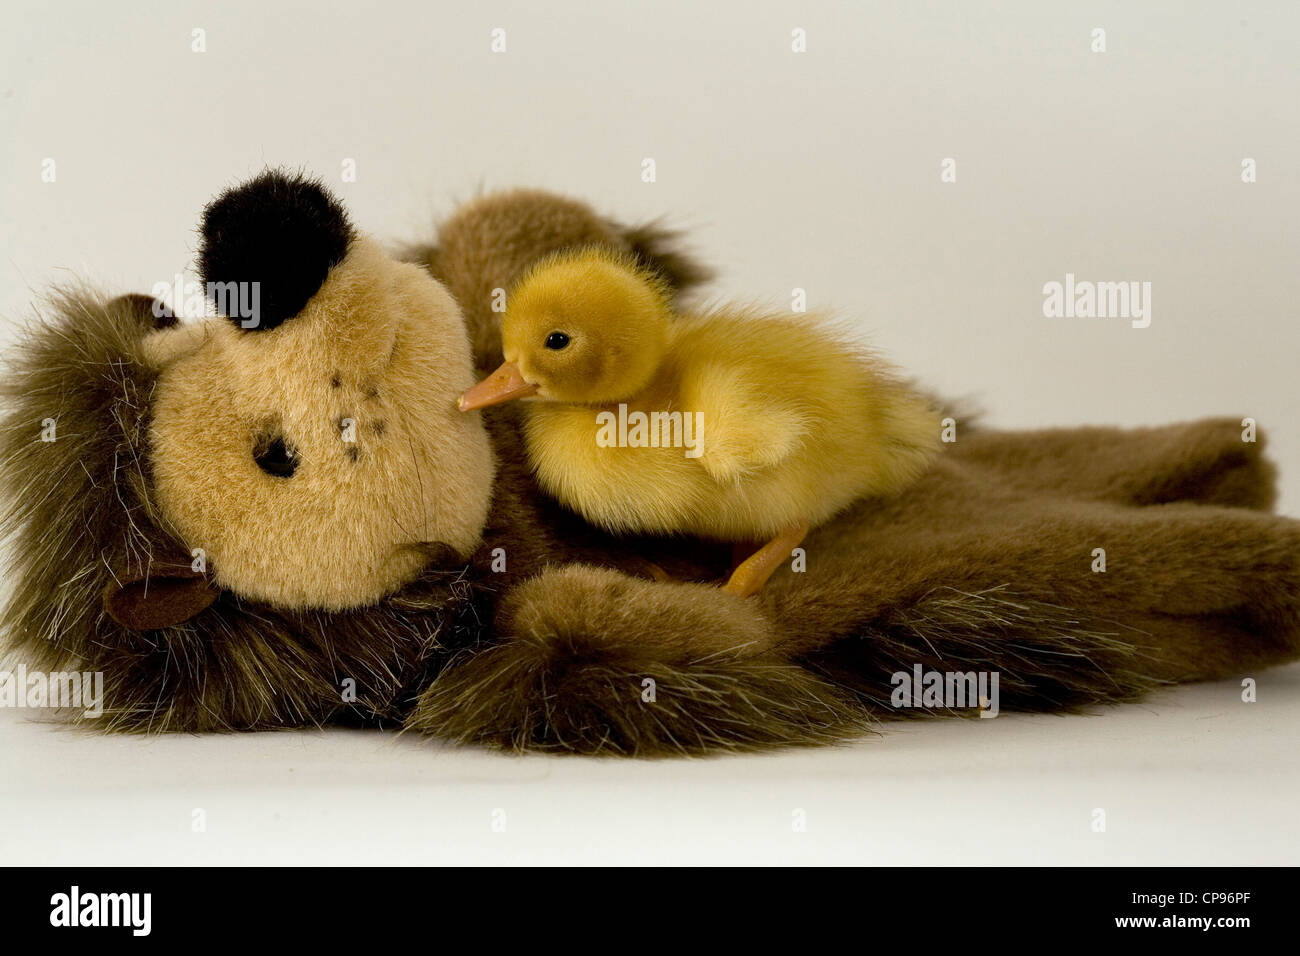 duckling teddy